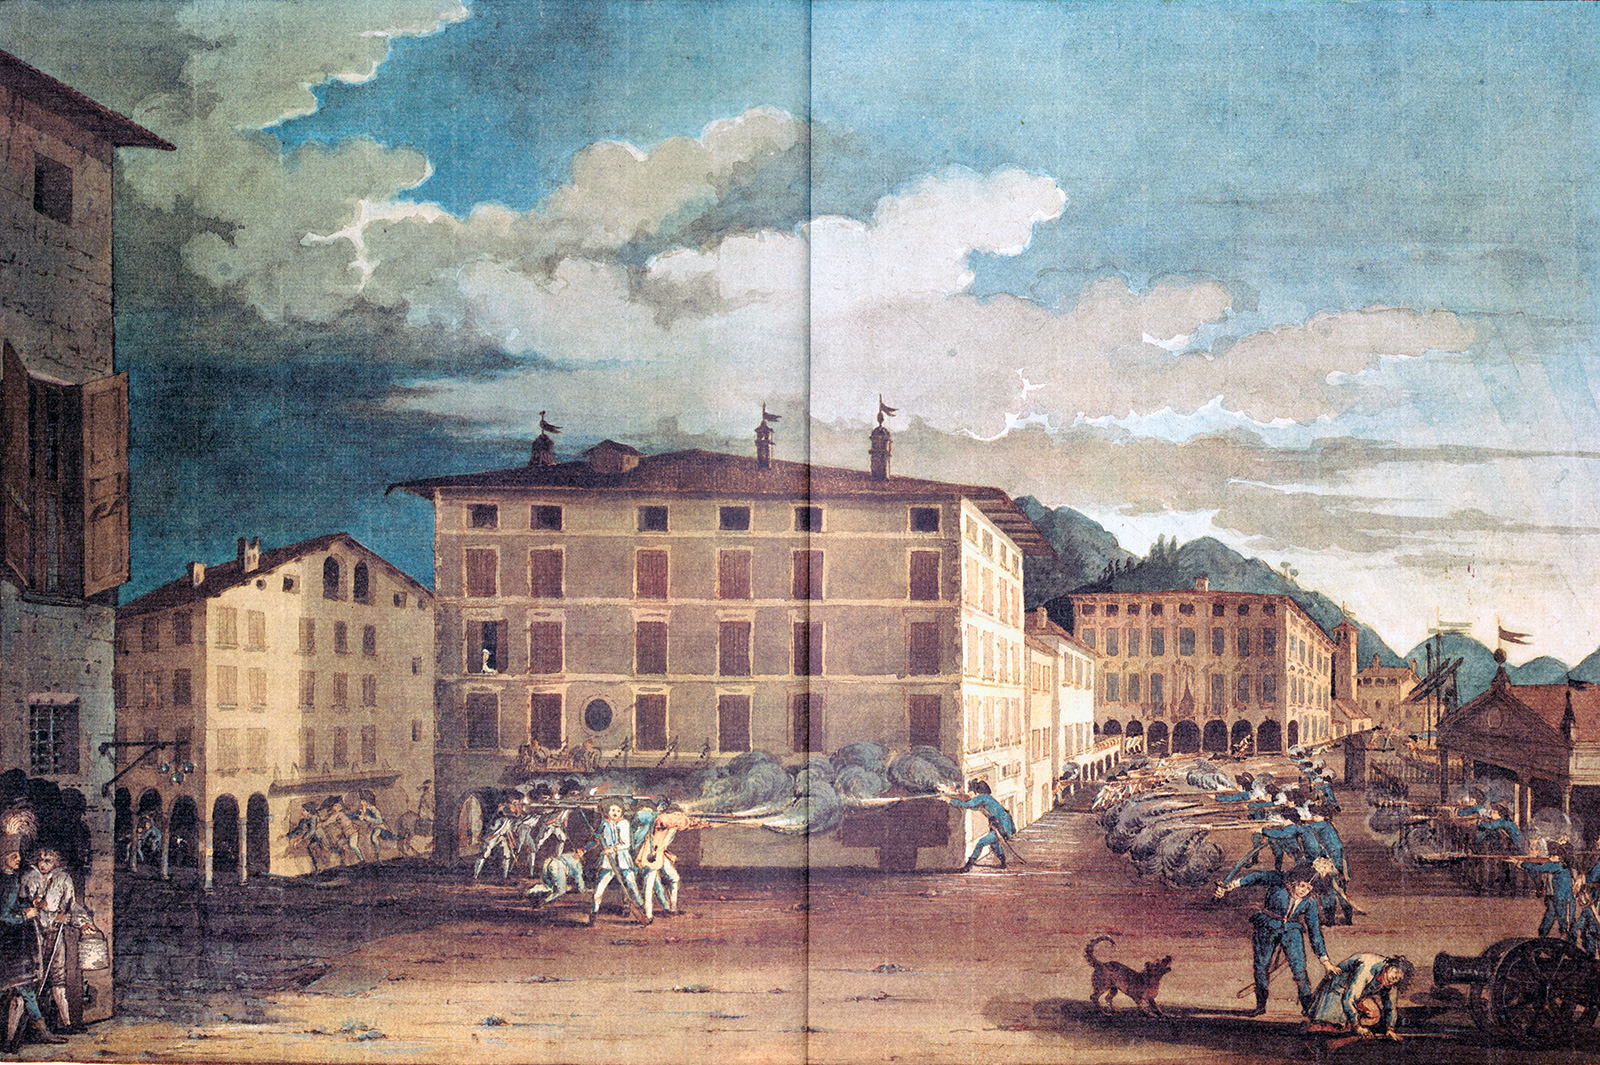 انتفاضة 15 فبراير 1798 بالرسم المائي للفنان روكو توريسيلي.